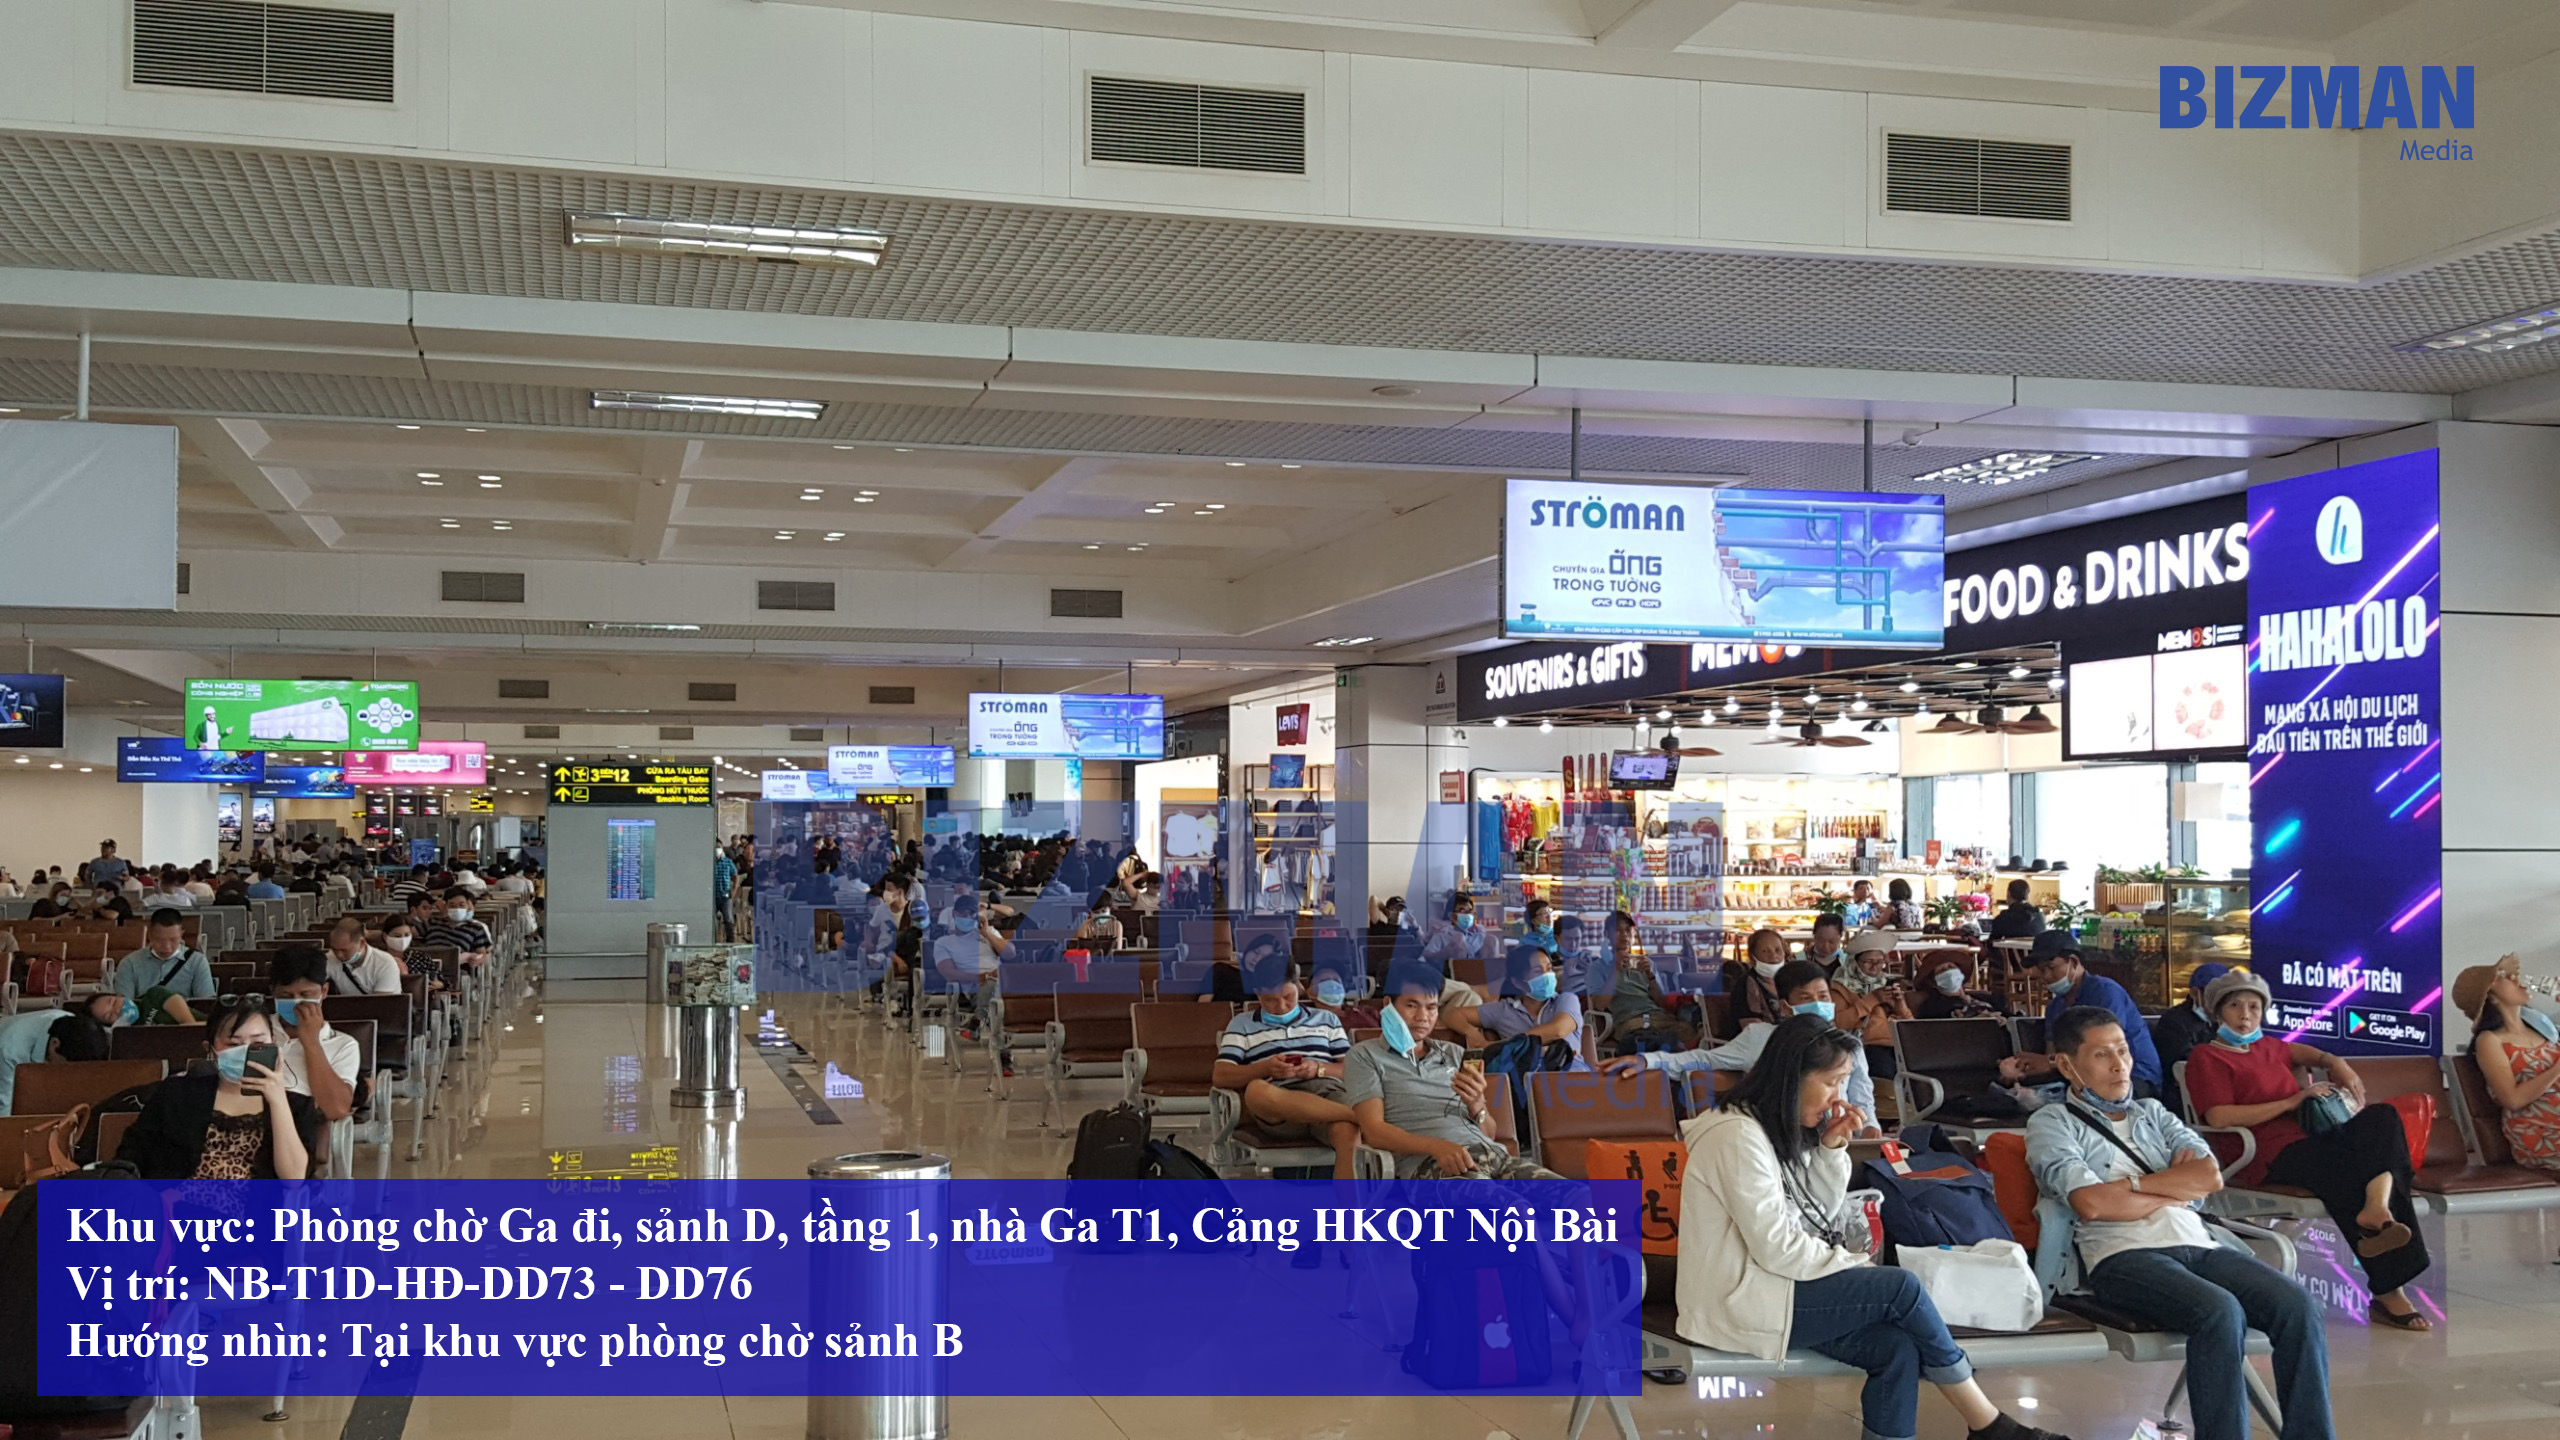 Hộp đèn sân bay – Nội Bài - T1D - HĐ - DD73 - DD76